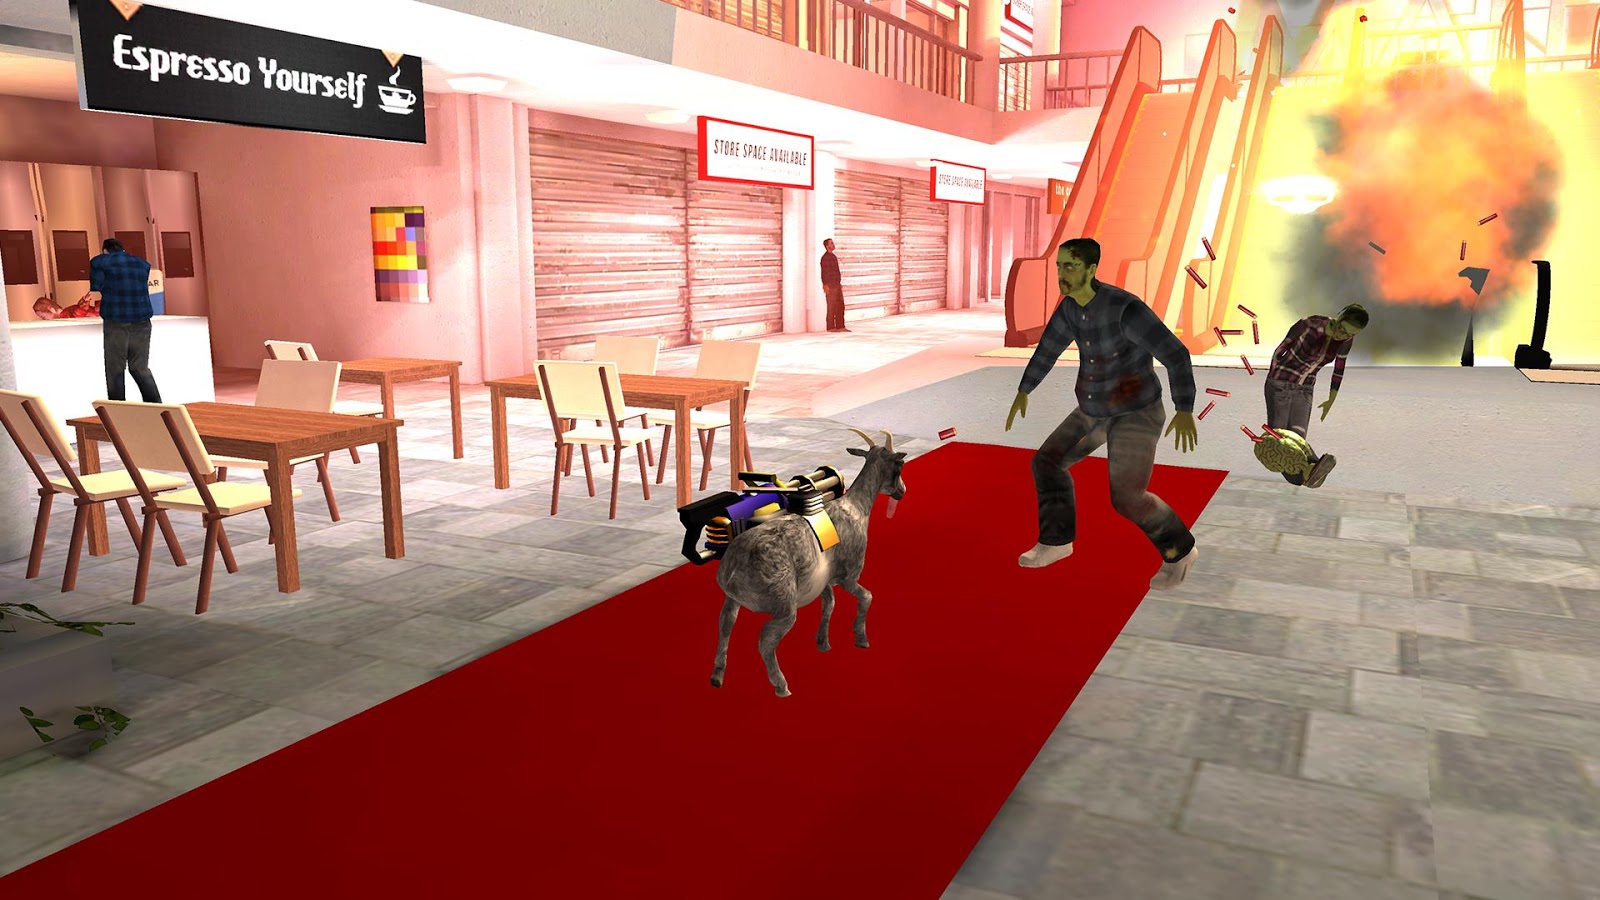 دانلود Goat Simulator GoatZ 1.4.6 – بازی شبیه ساز بز اندروید + دیتا